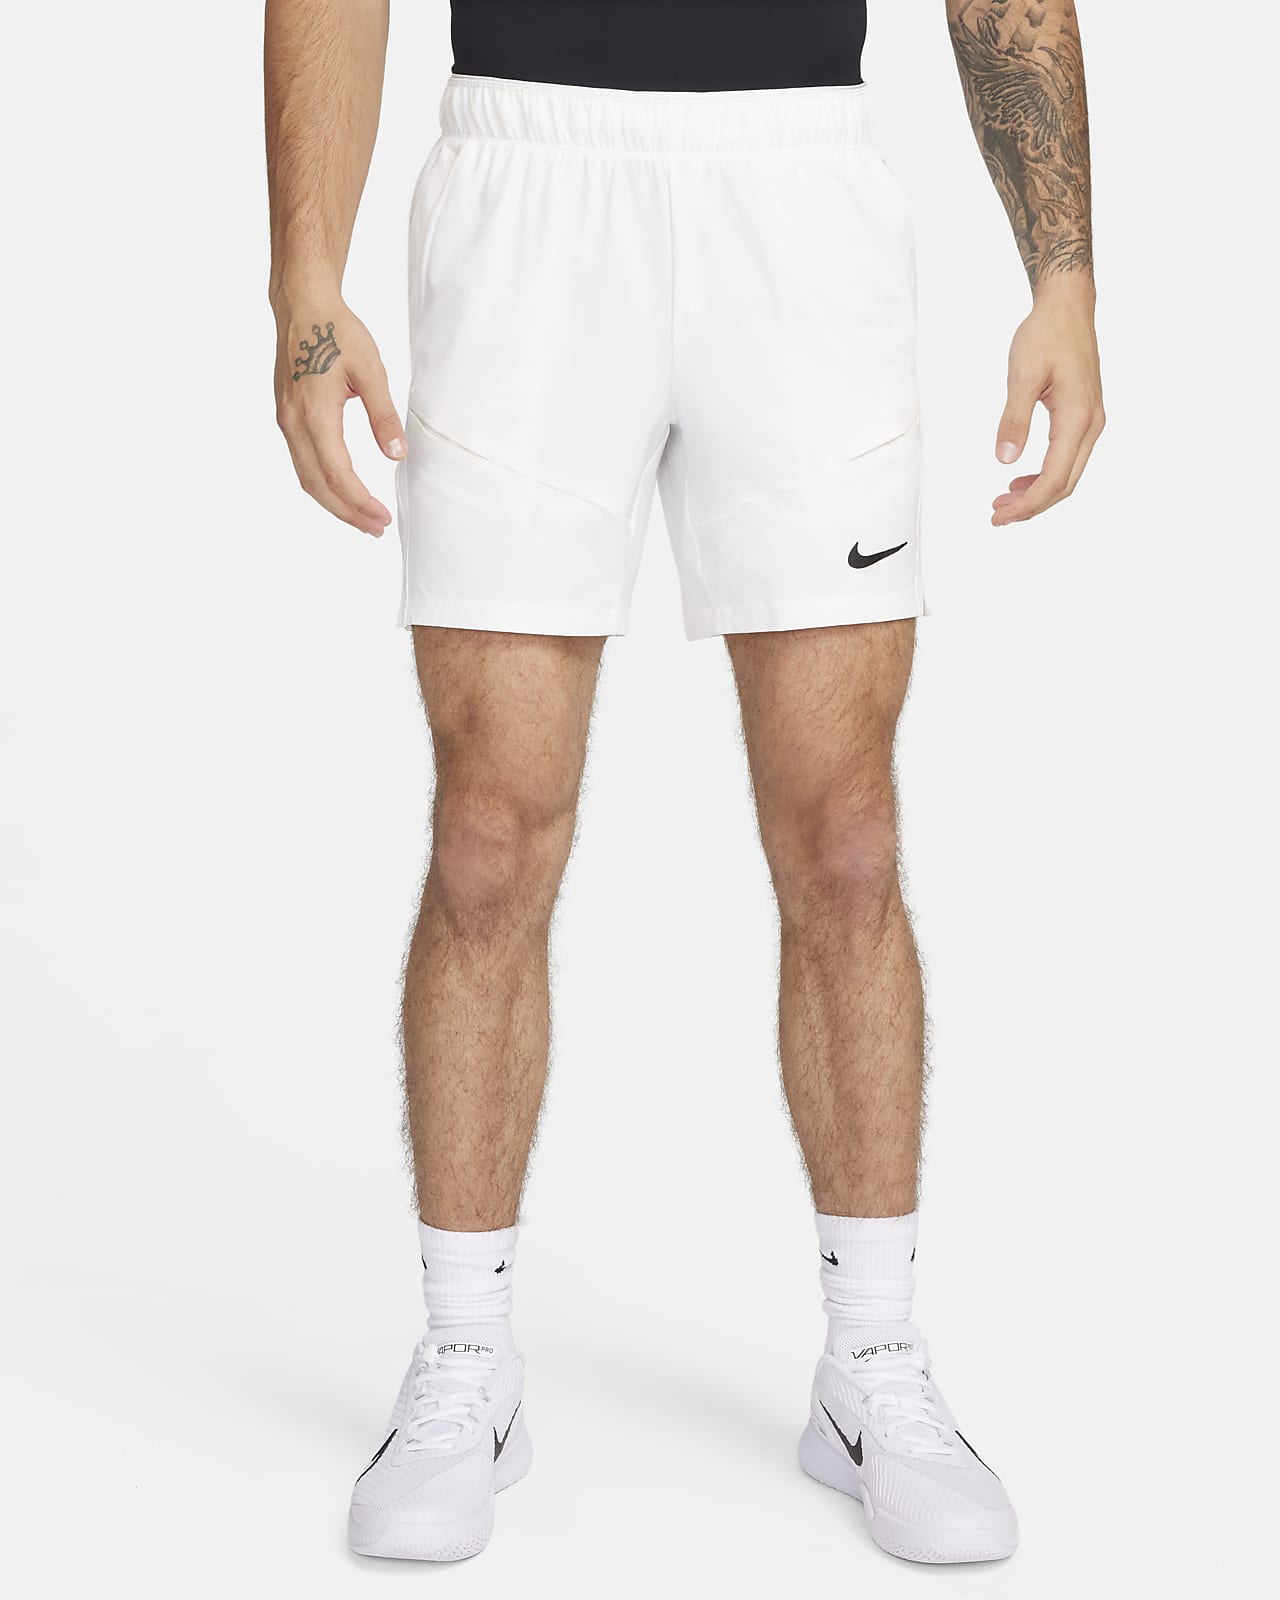 NikeCourt Advantage Dri-FIT-tennisshorts (18 cm) til mænd